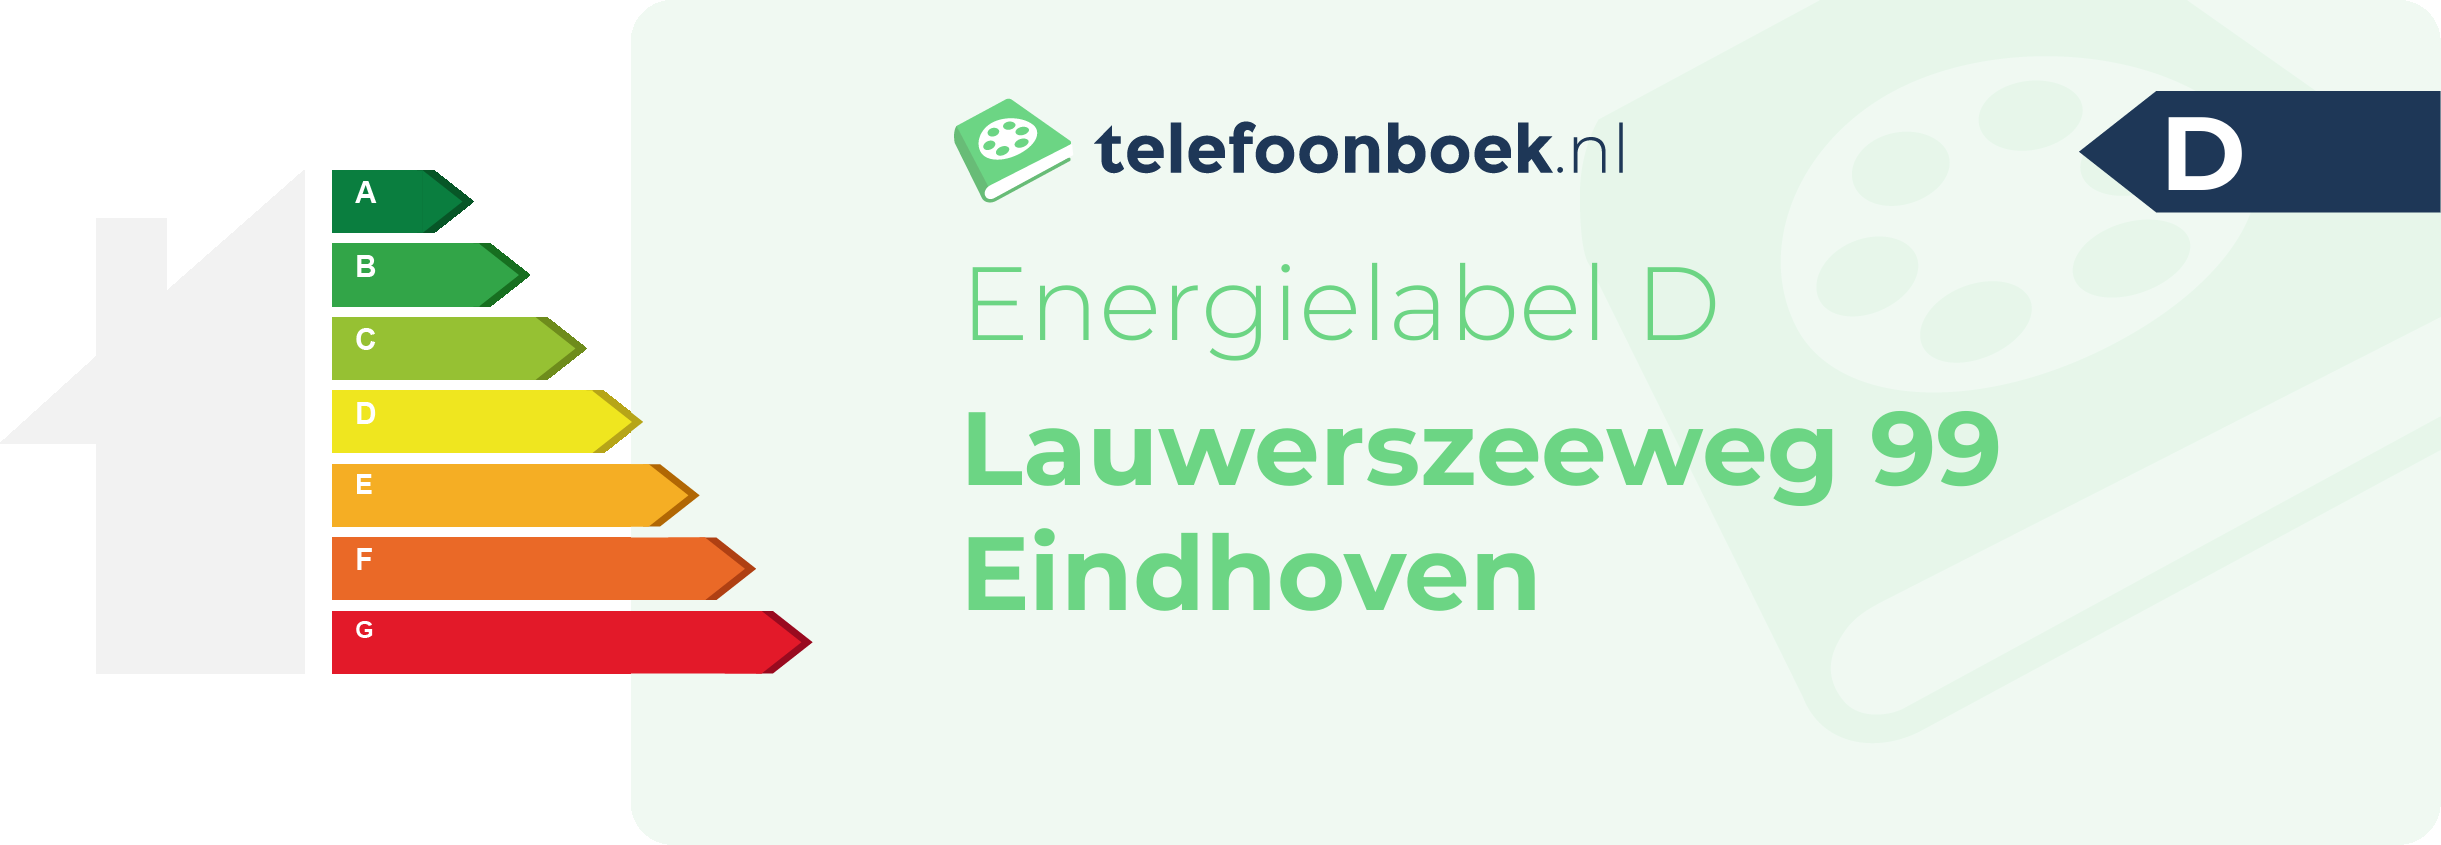 Energielabel Lauwerszeeweg 99 Eindhoven